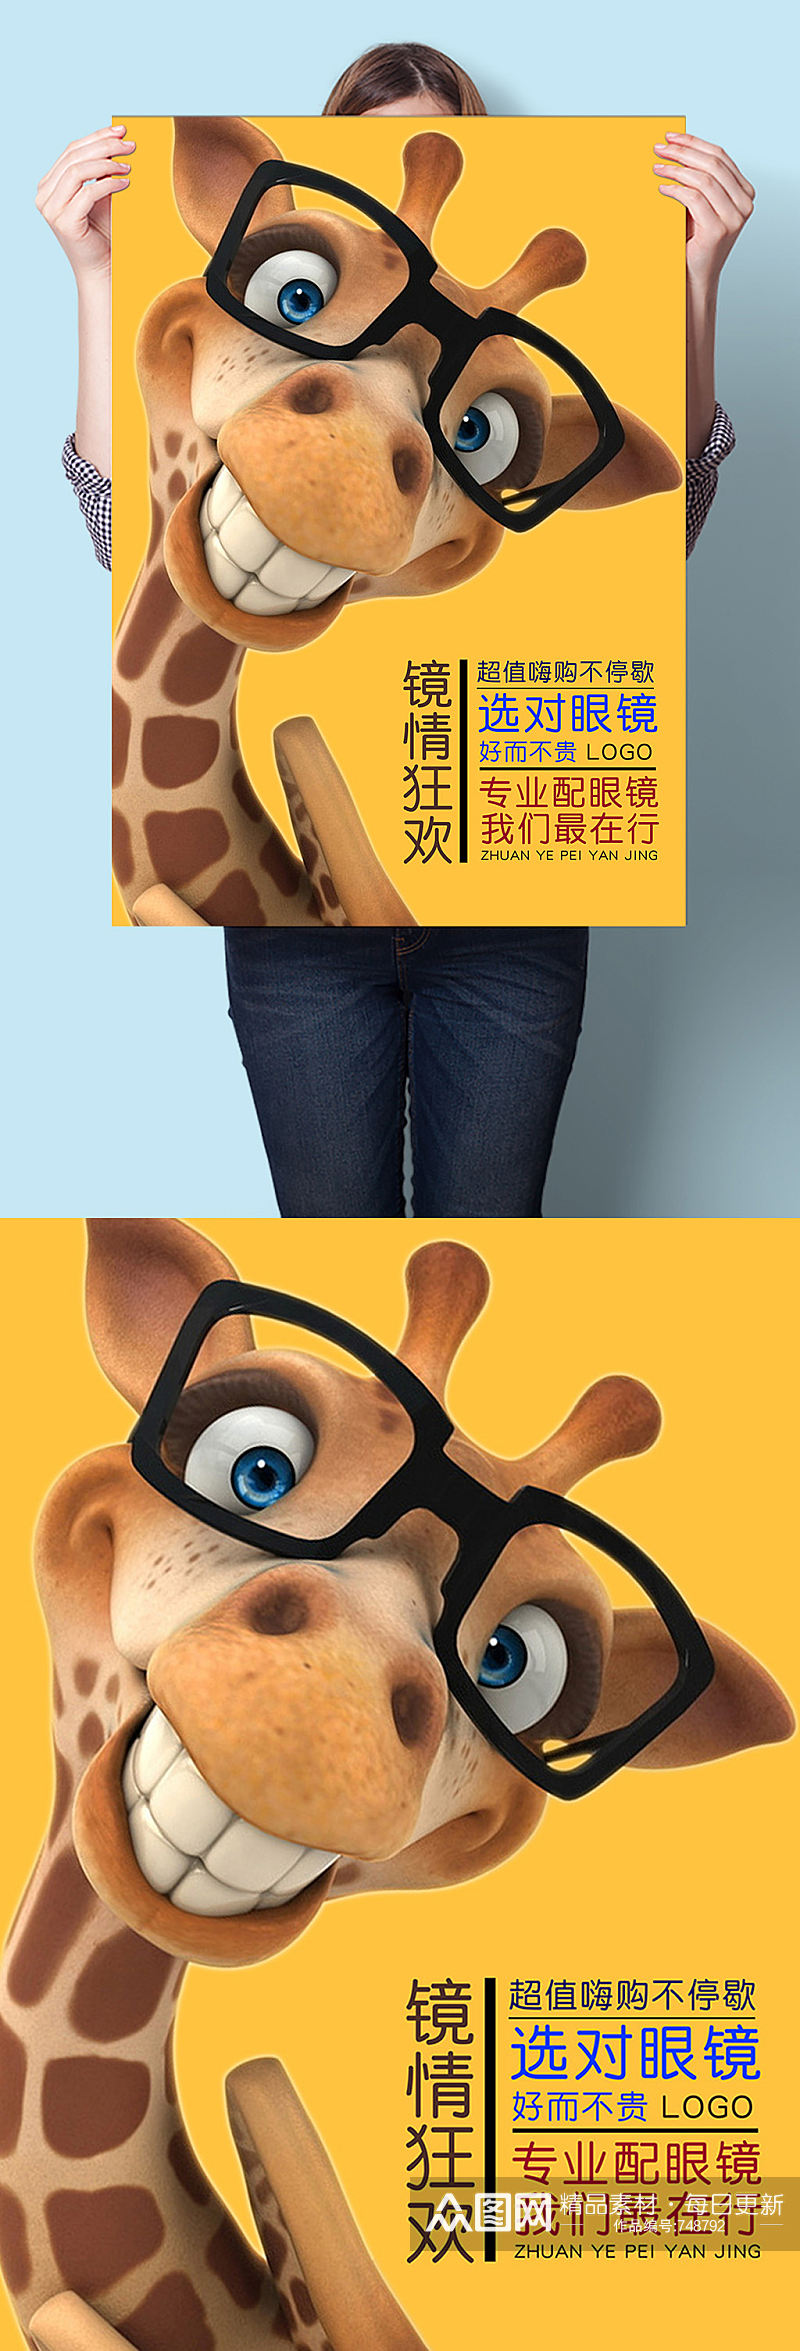 镜情狂欢眼镜店活动宣传海报素材